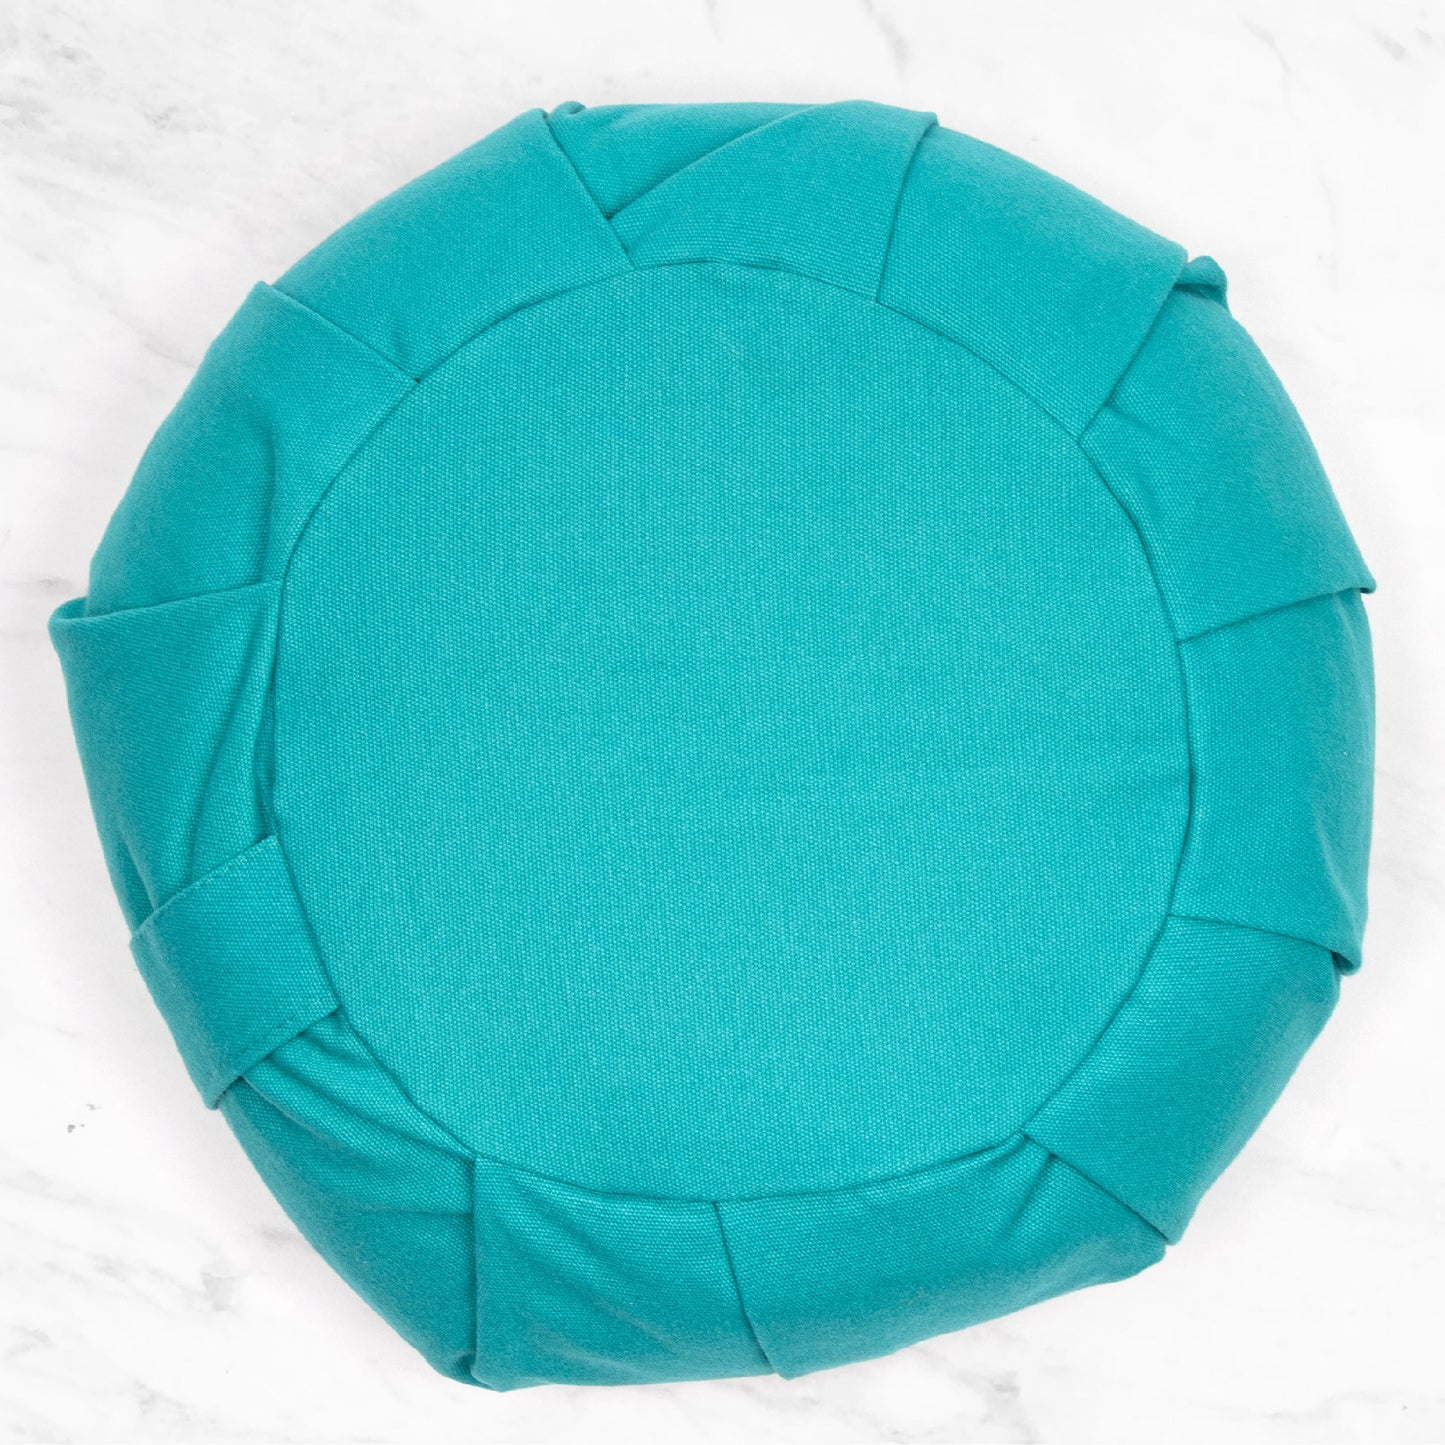 Zafu Meditation Cushion - Turquoise